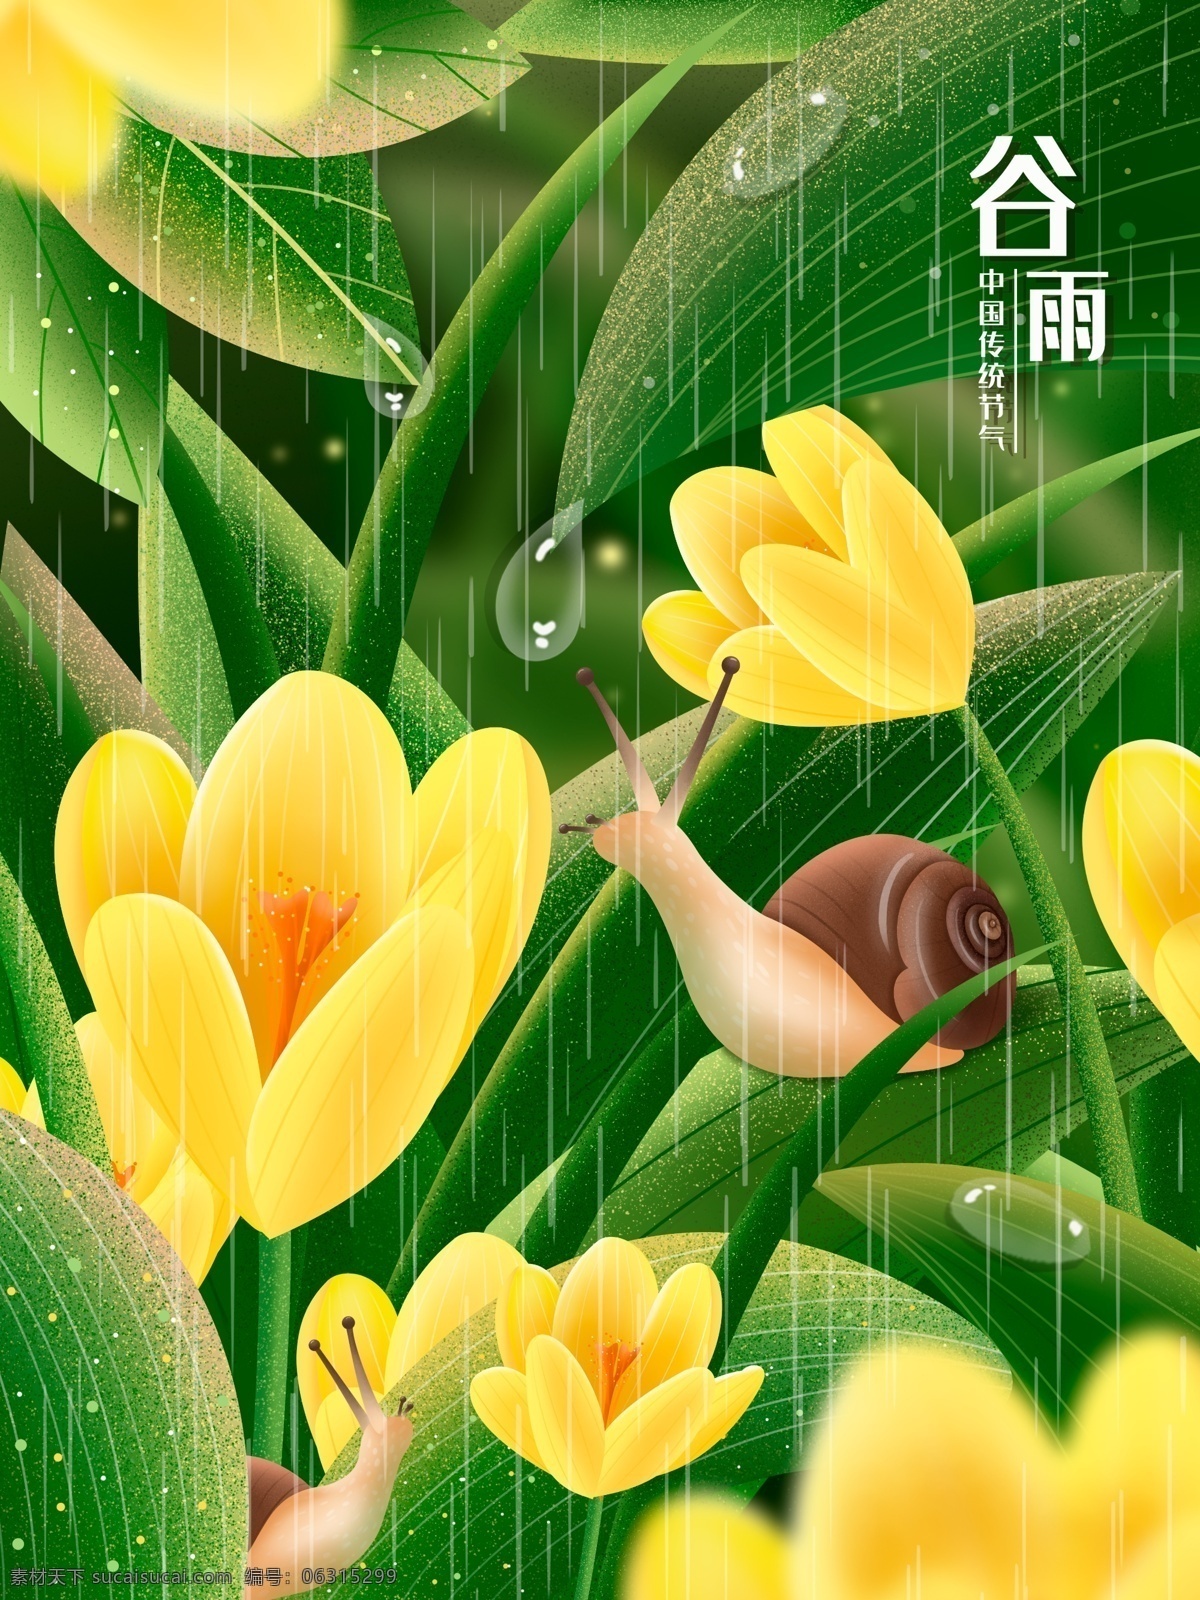 原创 二十四节气 谷雨 写实 插画 节气 雨水 春季 四月 节日 绿色 黄花 蜗牛 白露 露水